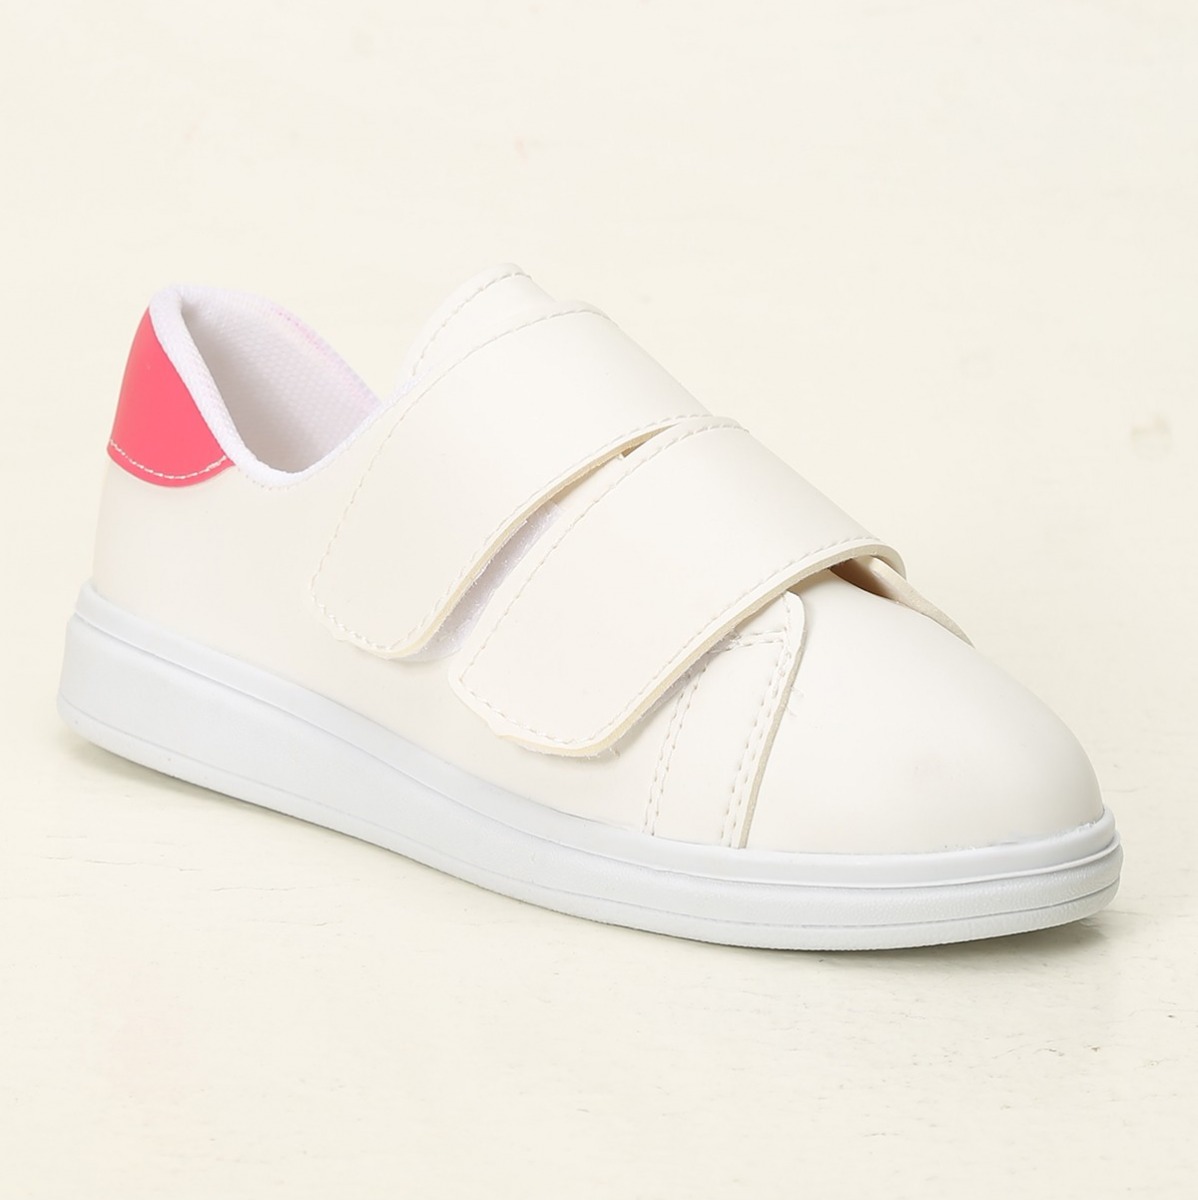 Flo Beyaz-Fuşya Kadın Cırtlı Spor Ayakkabı 4000-19-101003. 2